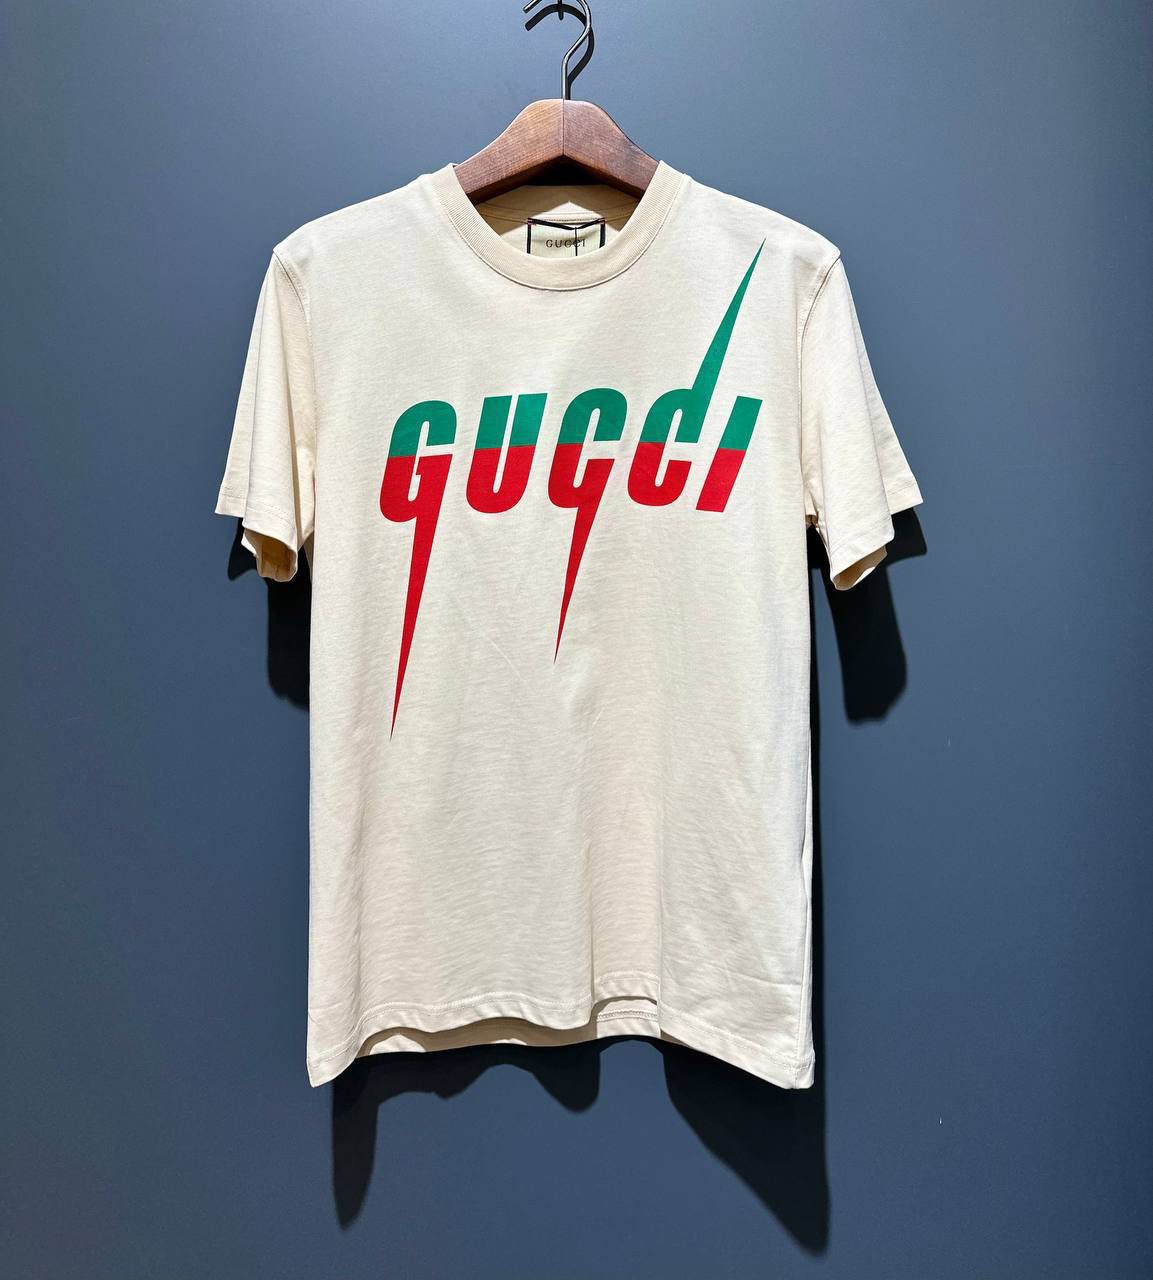 Gucci Blade Print T-Shirt